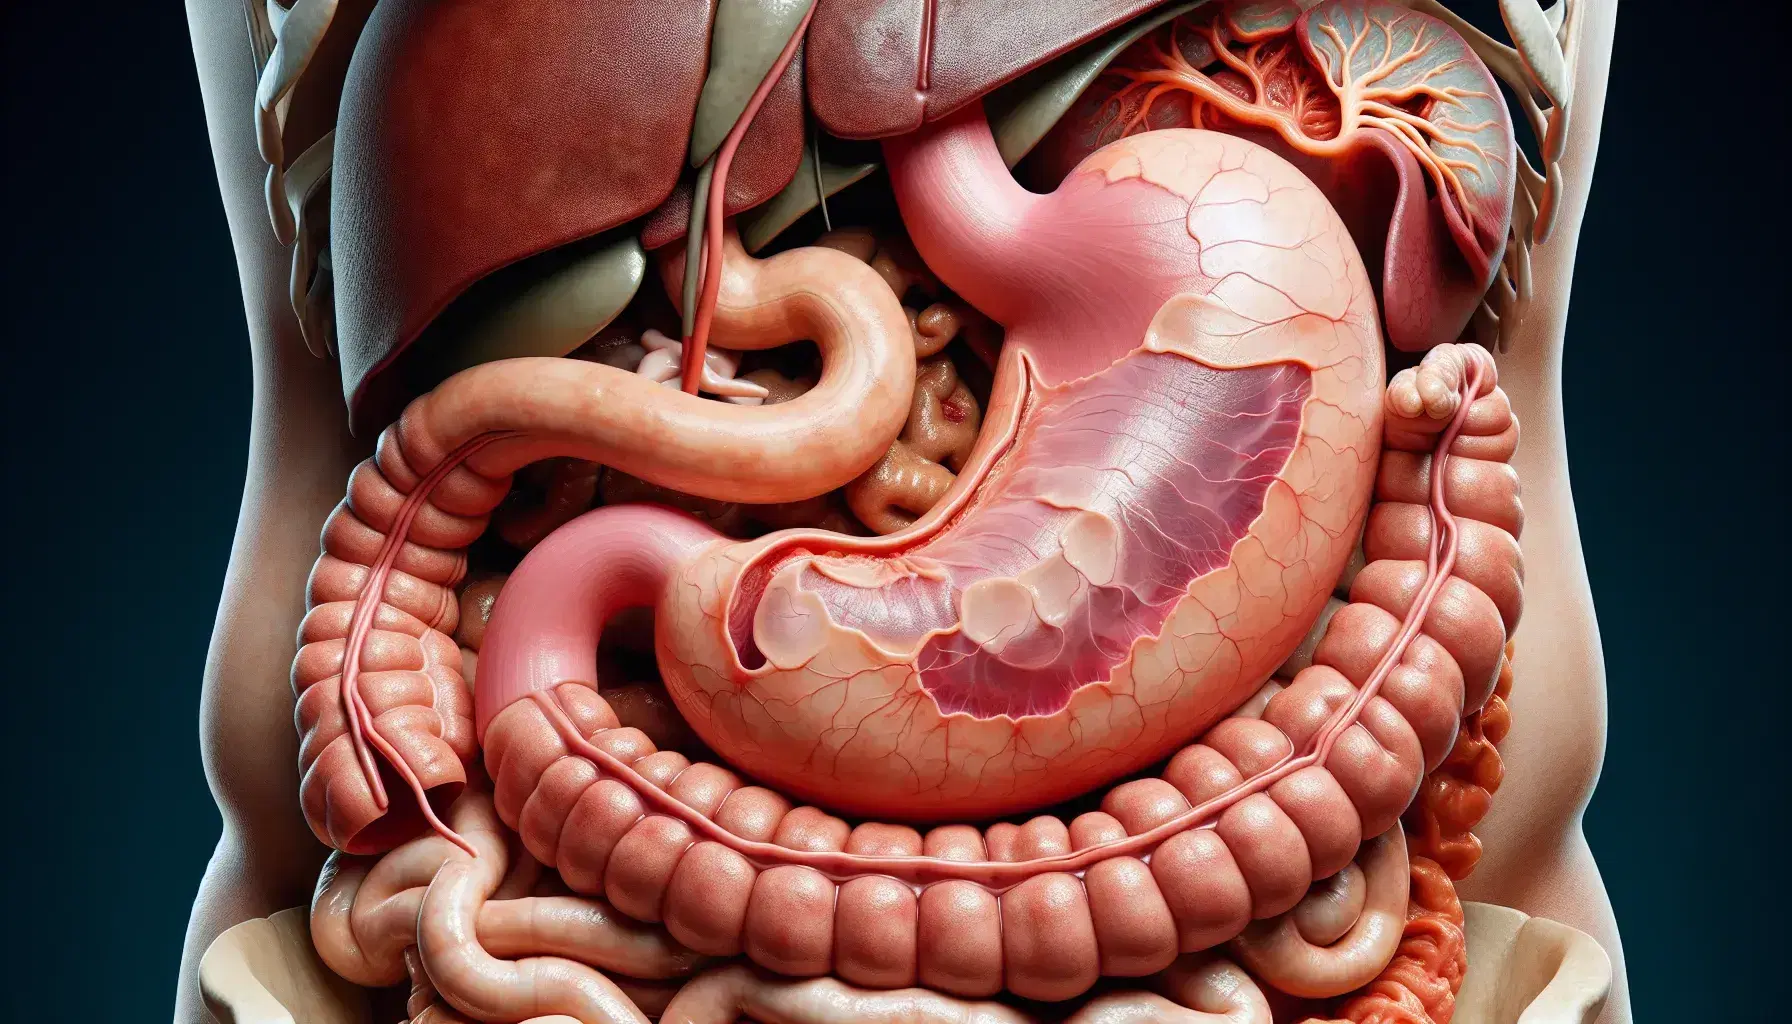 Vista anatómica detallada del estómago humano en el sistema digestivo, mostrando su forma de 'J', curvaturas y mucosa gástrica, rodeado de hígado, páncreas e intestino delgado.